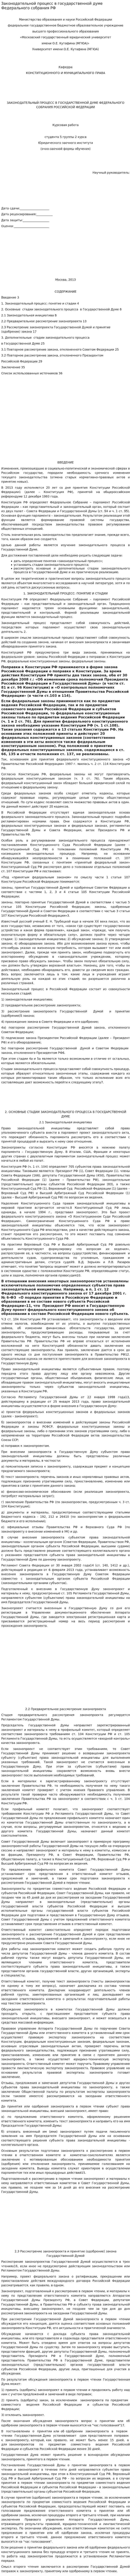 Законодательной процесс в государственной думе Федерального собрания РФ